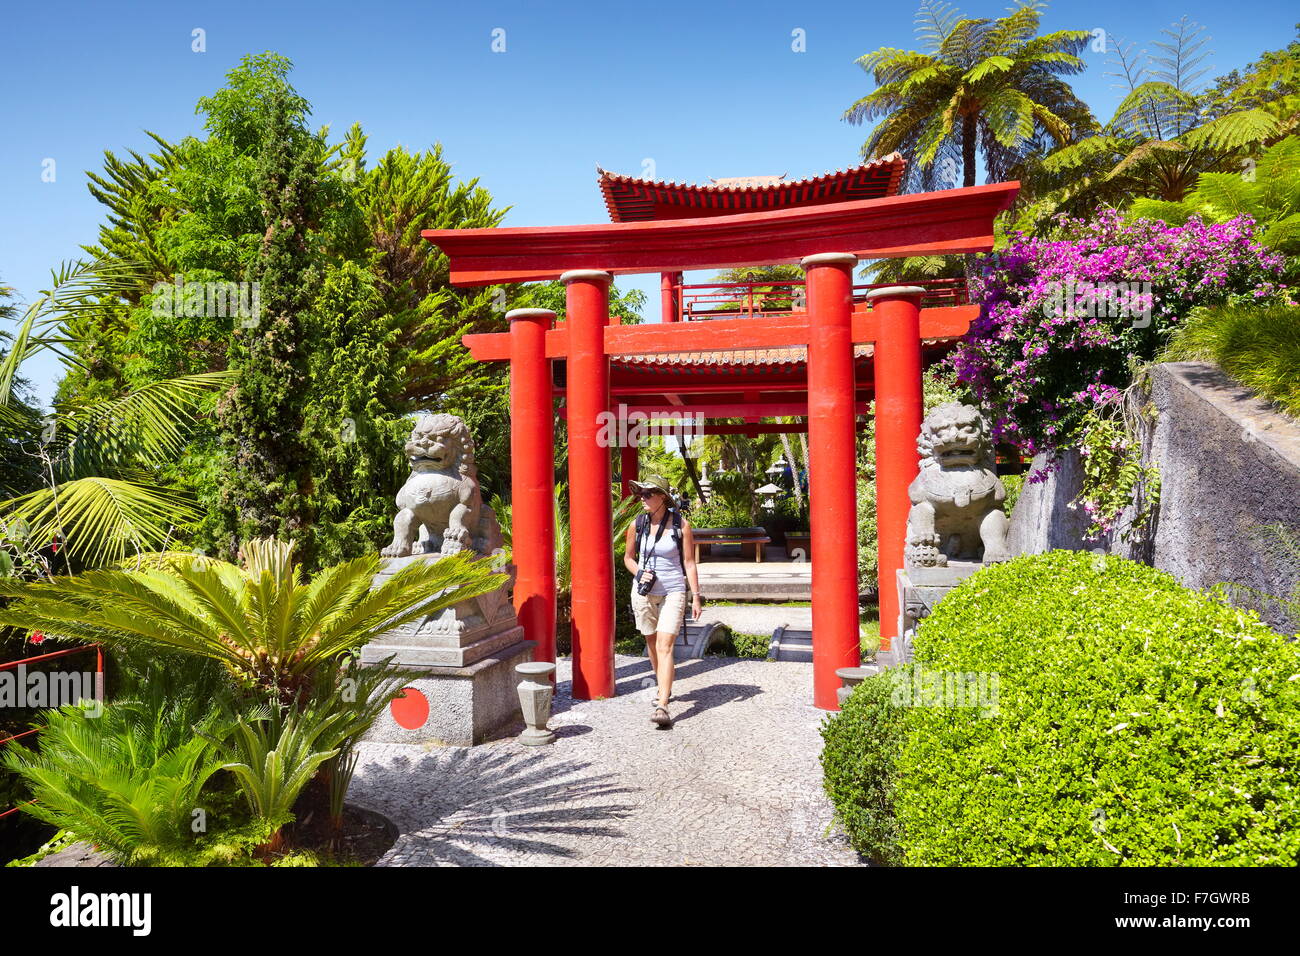 Monte Palace Tropical Garden (Japanese garden) - Monte, Madeira Island, Portugal Stock Photo